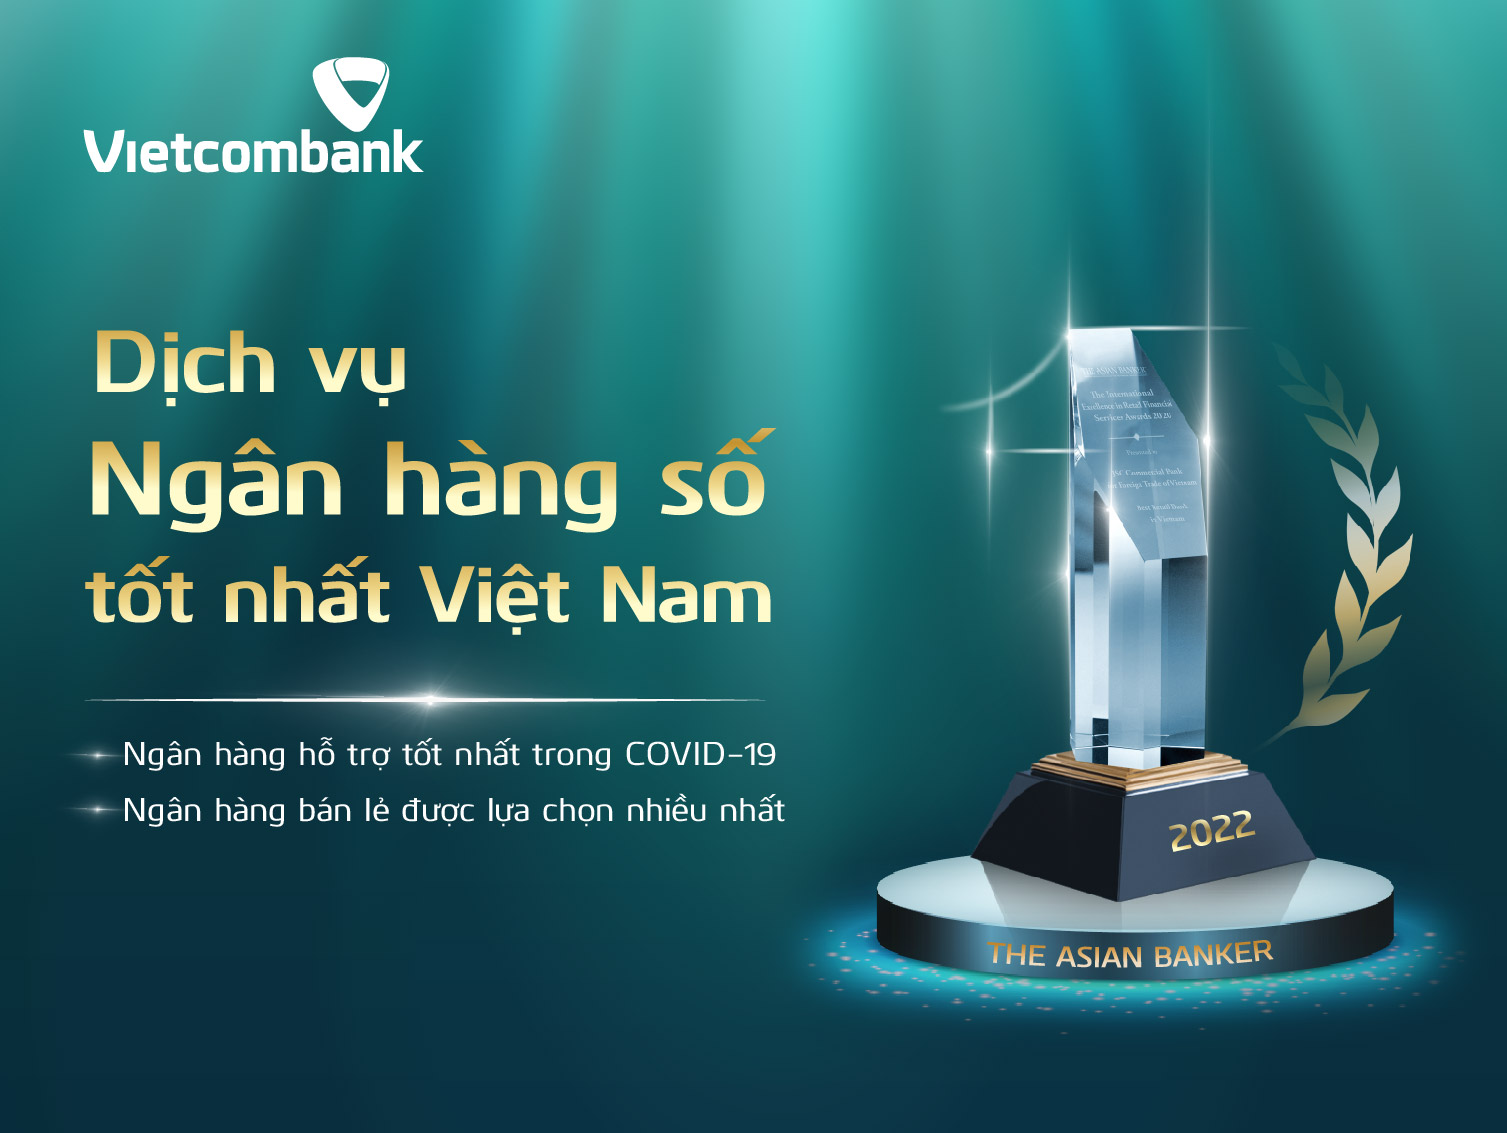 Vietcombank được vinh danh với ba giải thưởng lớn của The Asian Banker.